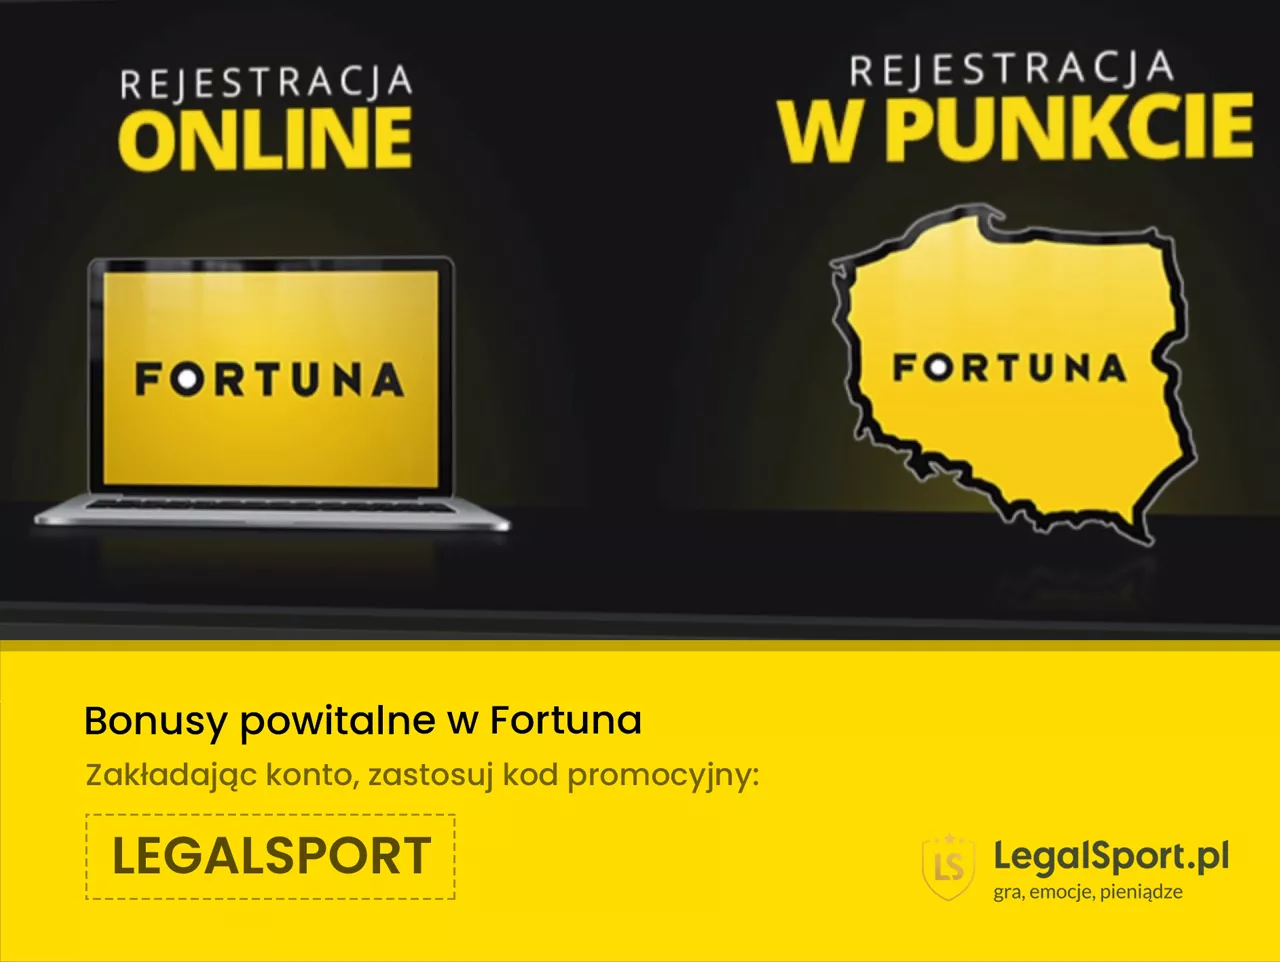 Fortuna - rejestracja z kodem promocyjnym